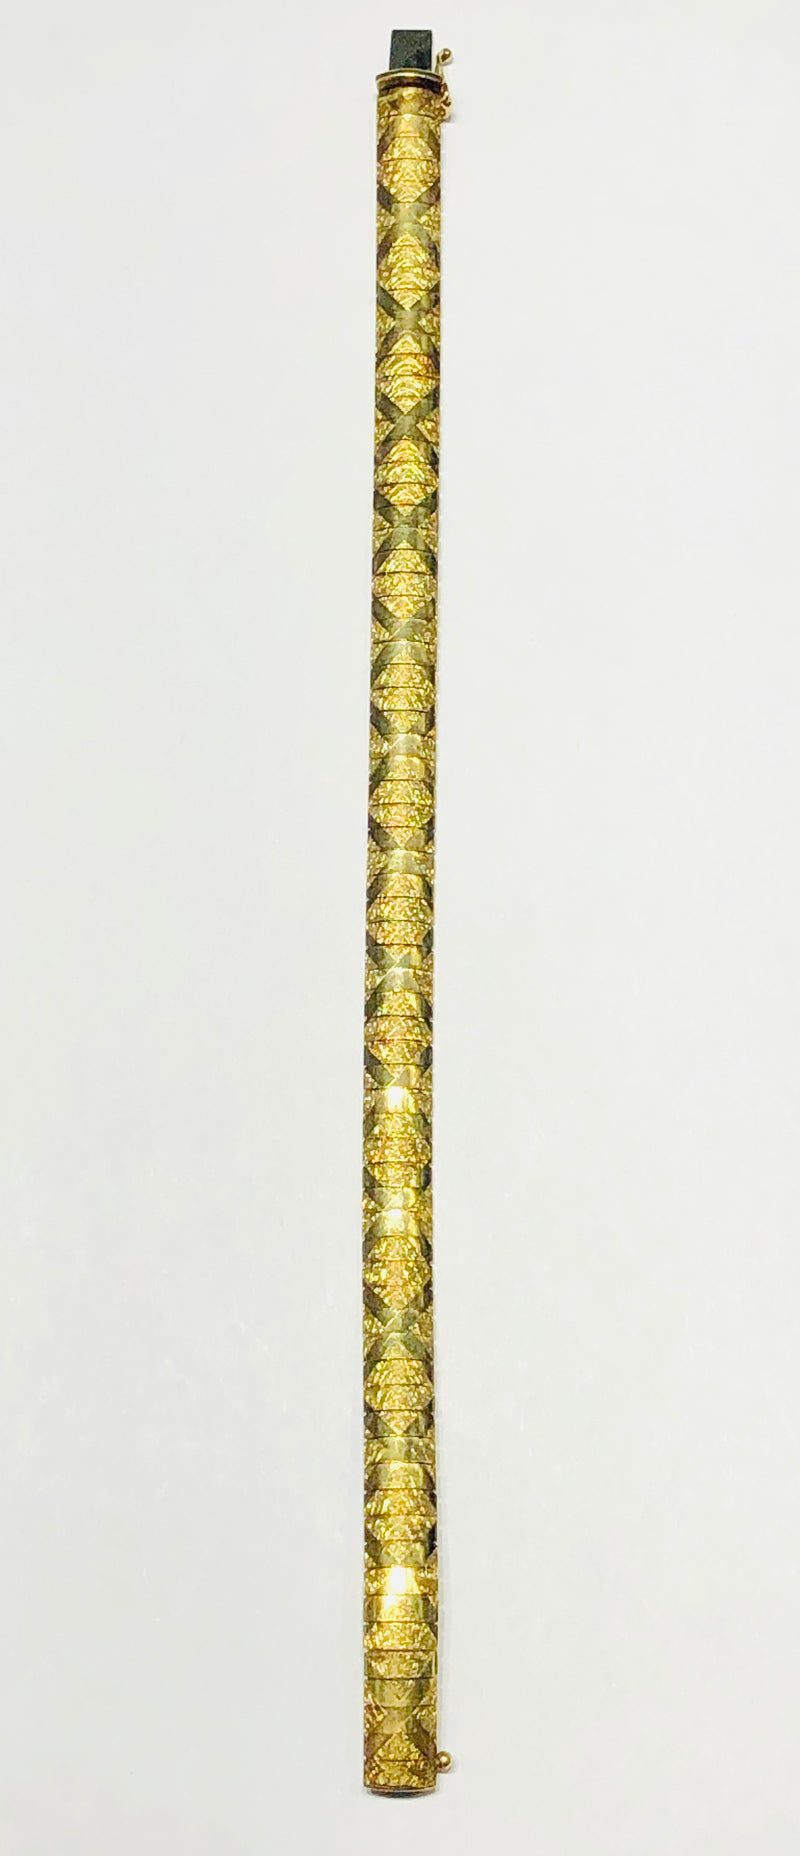 Omega Bracelet (14K)